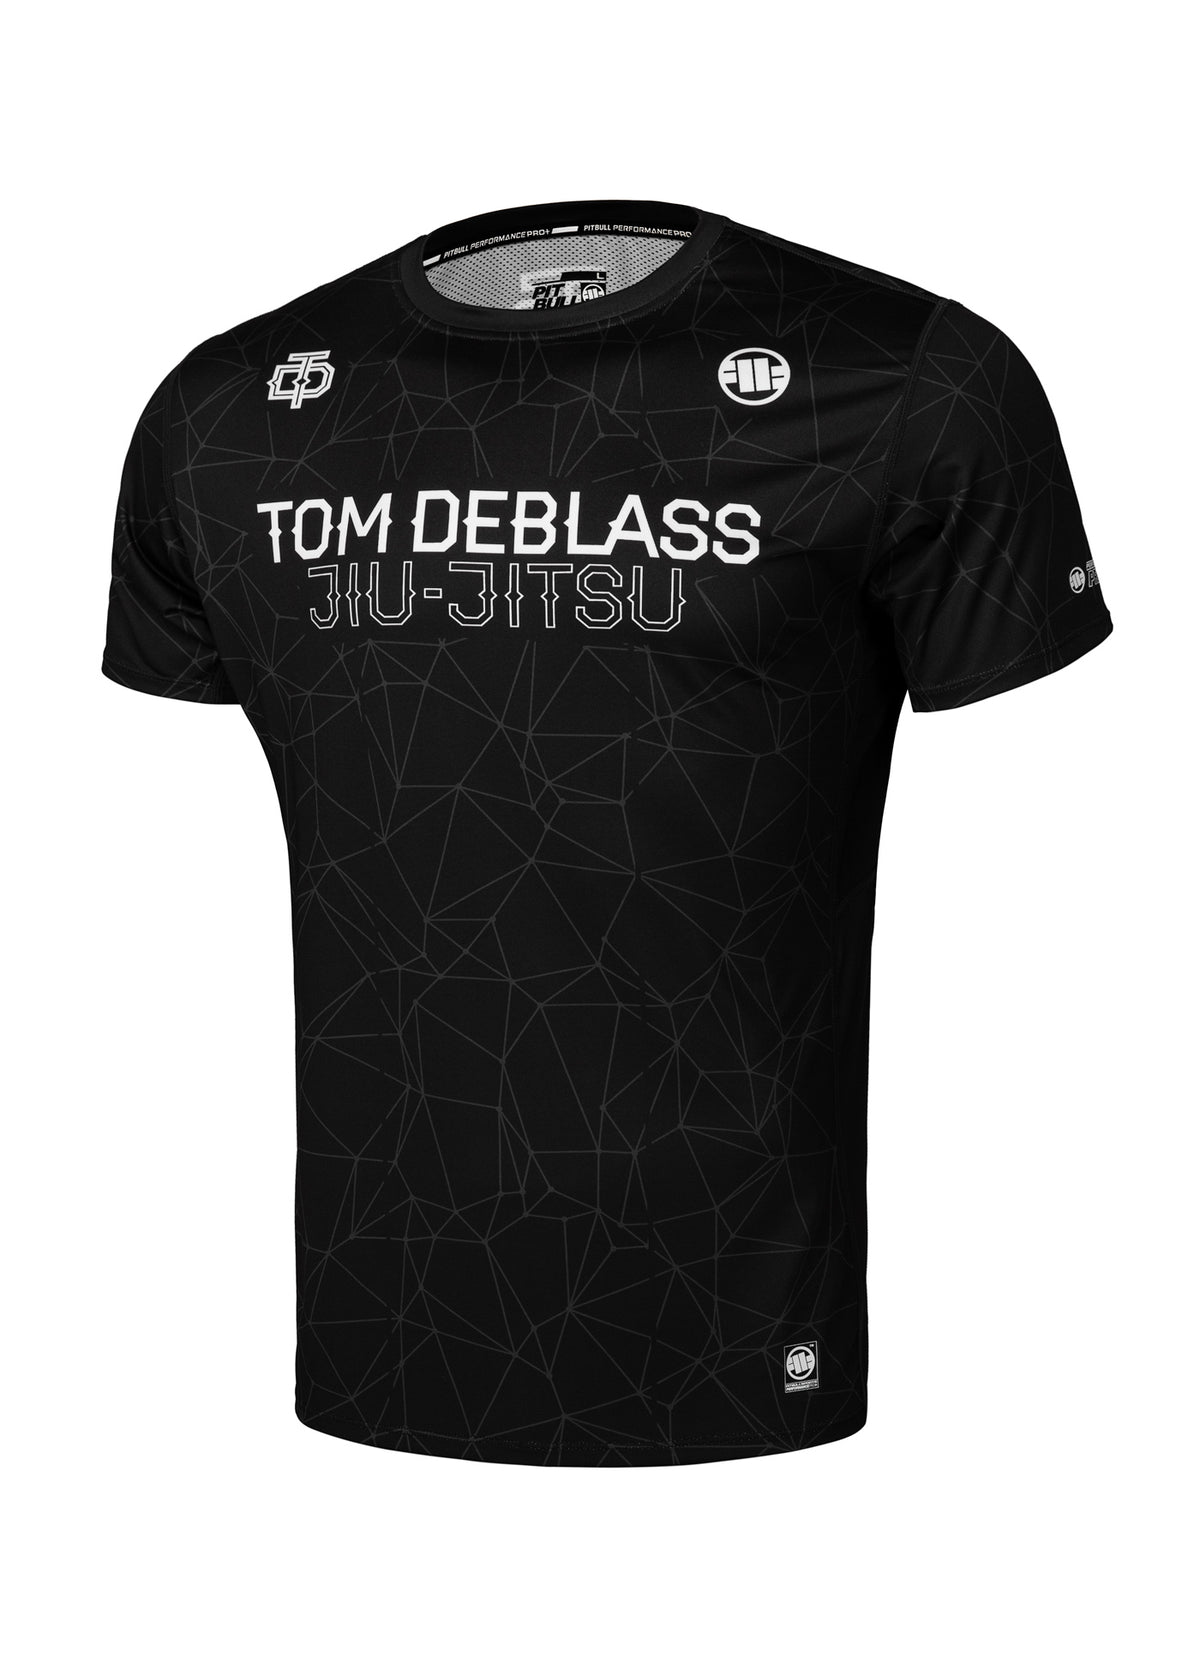 TOM DEBLASS Black Mesh Shirt